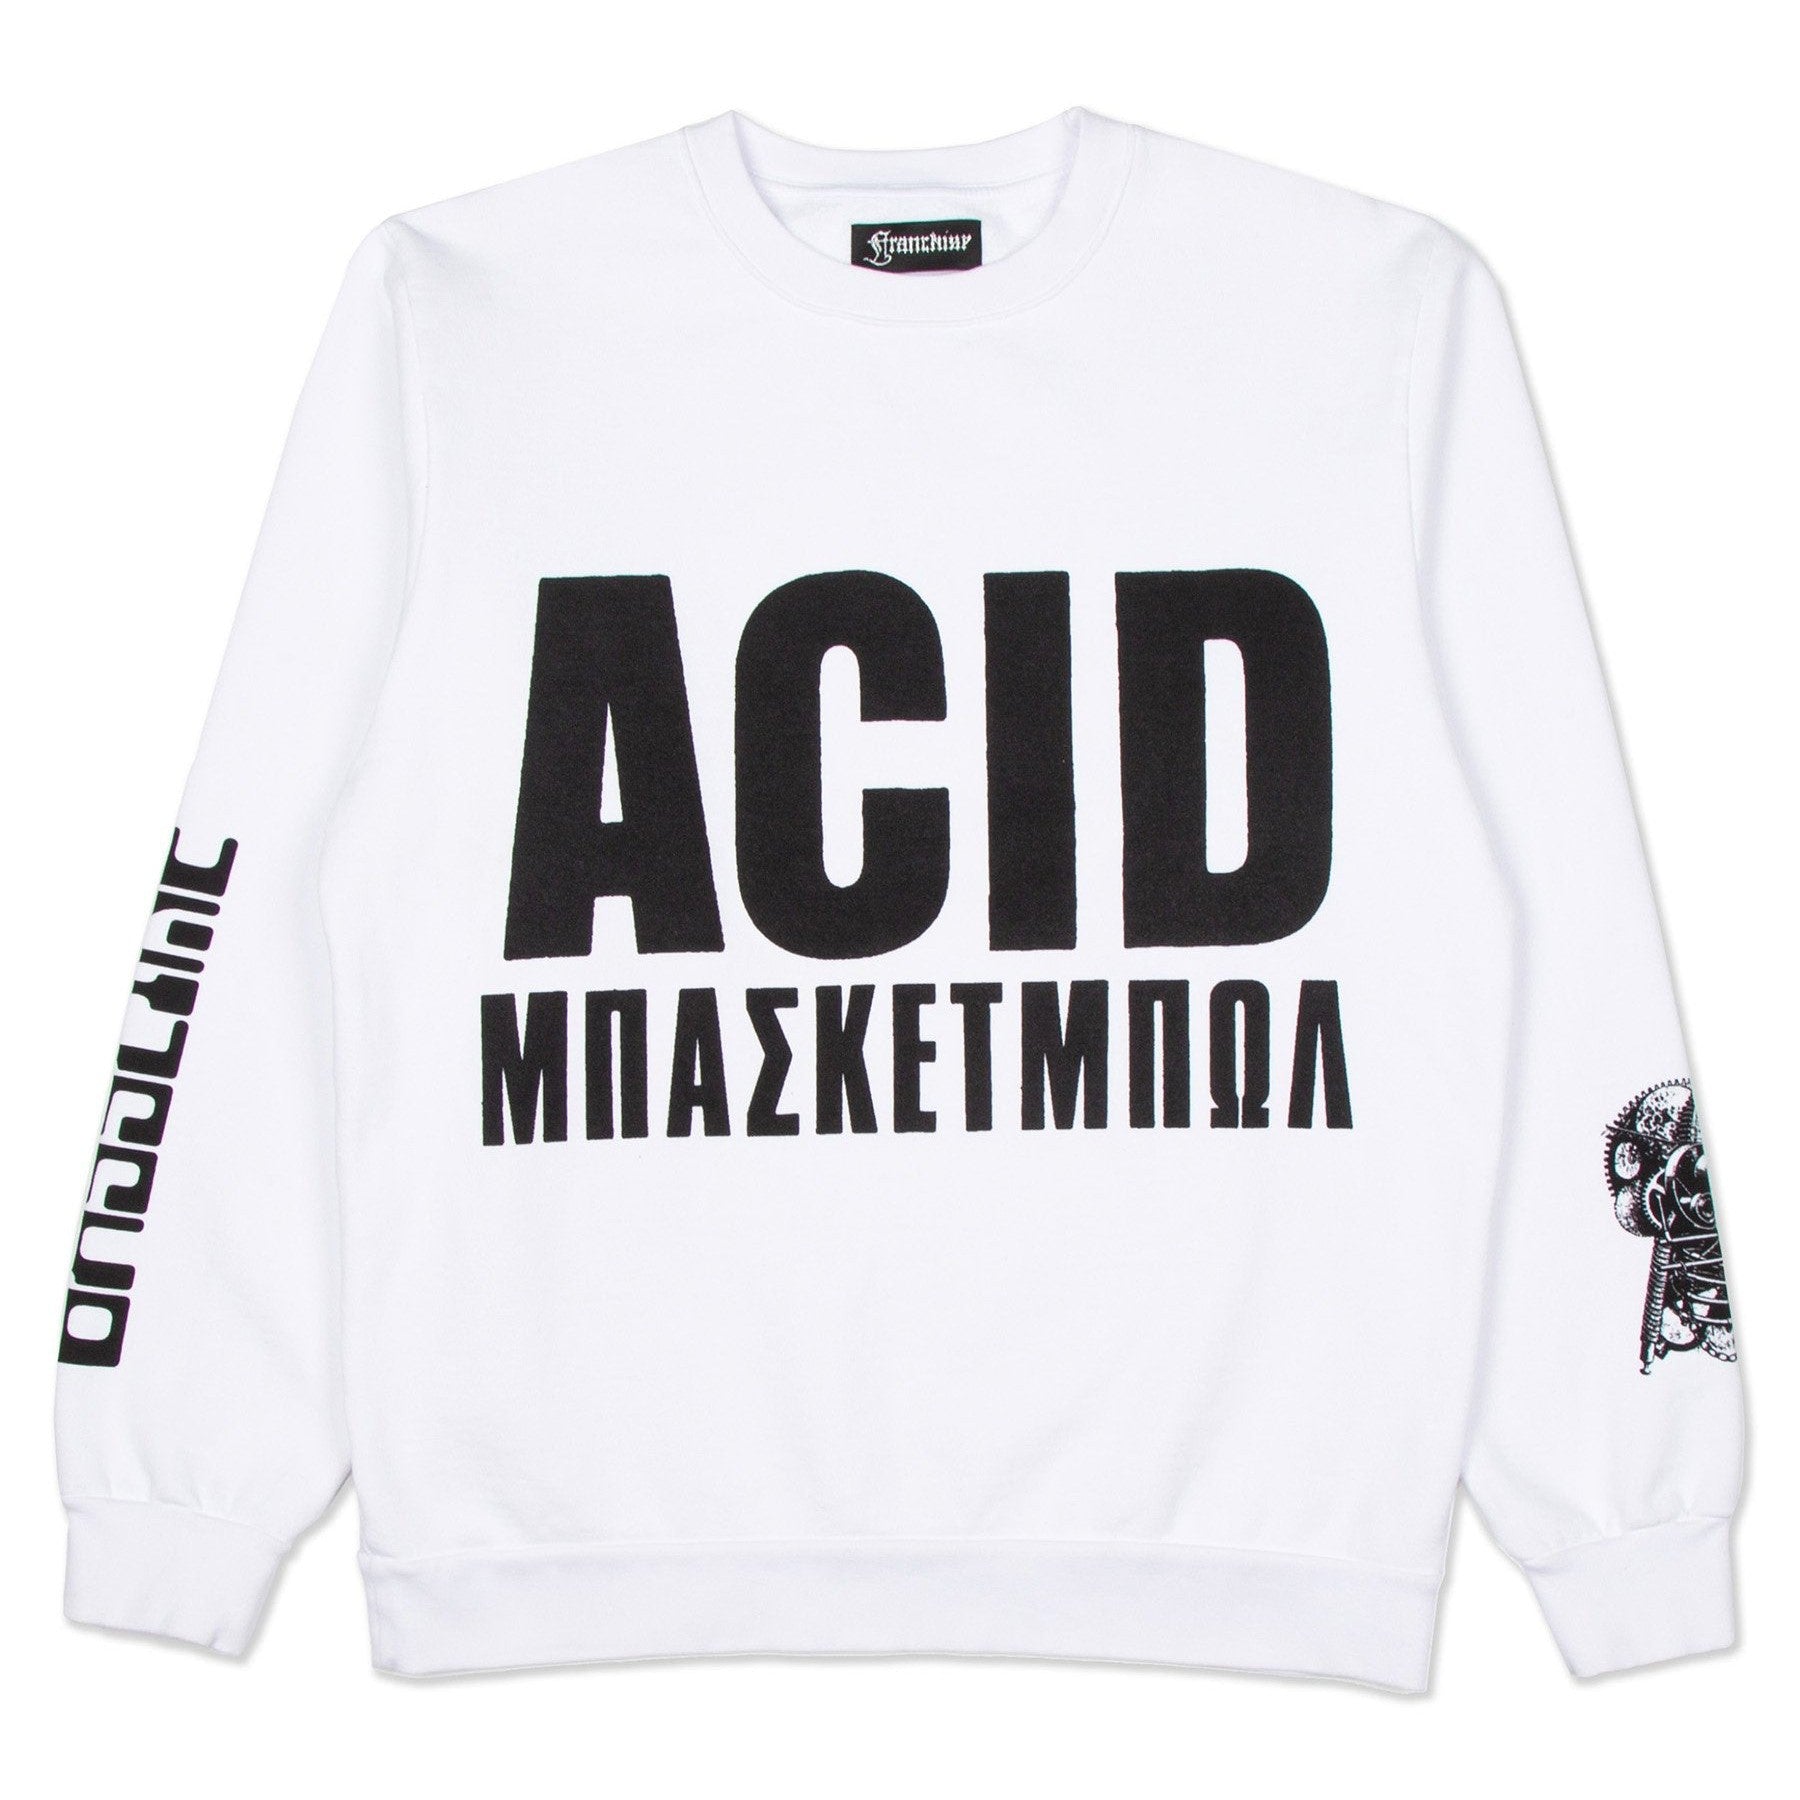 Acid クルーネック スウェットシャツ - ホワイト